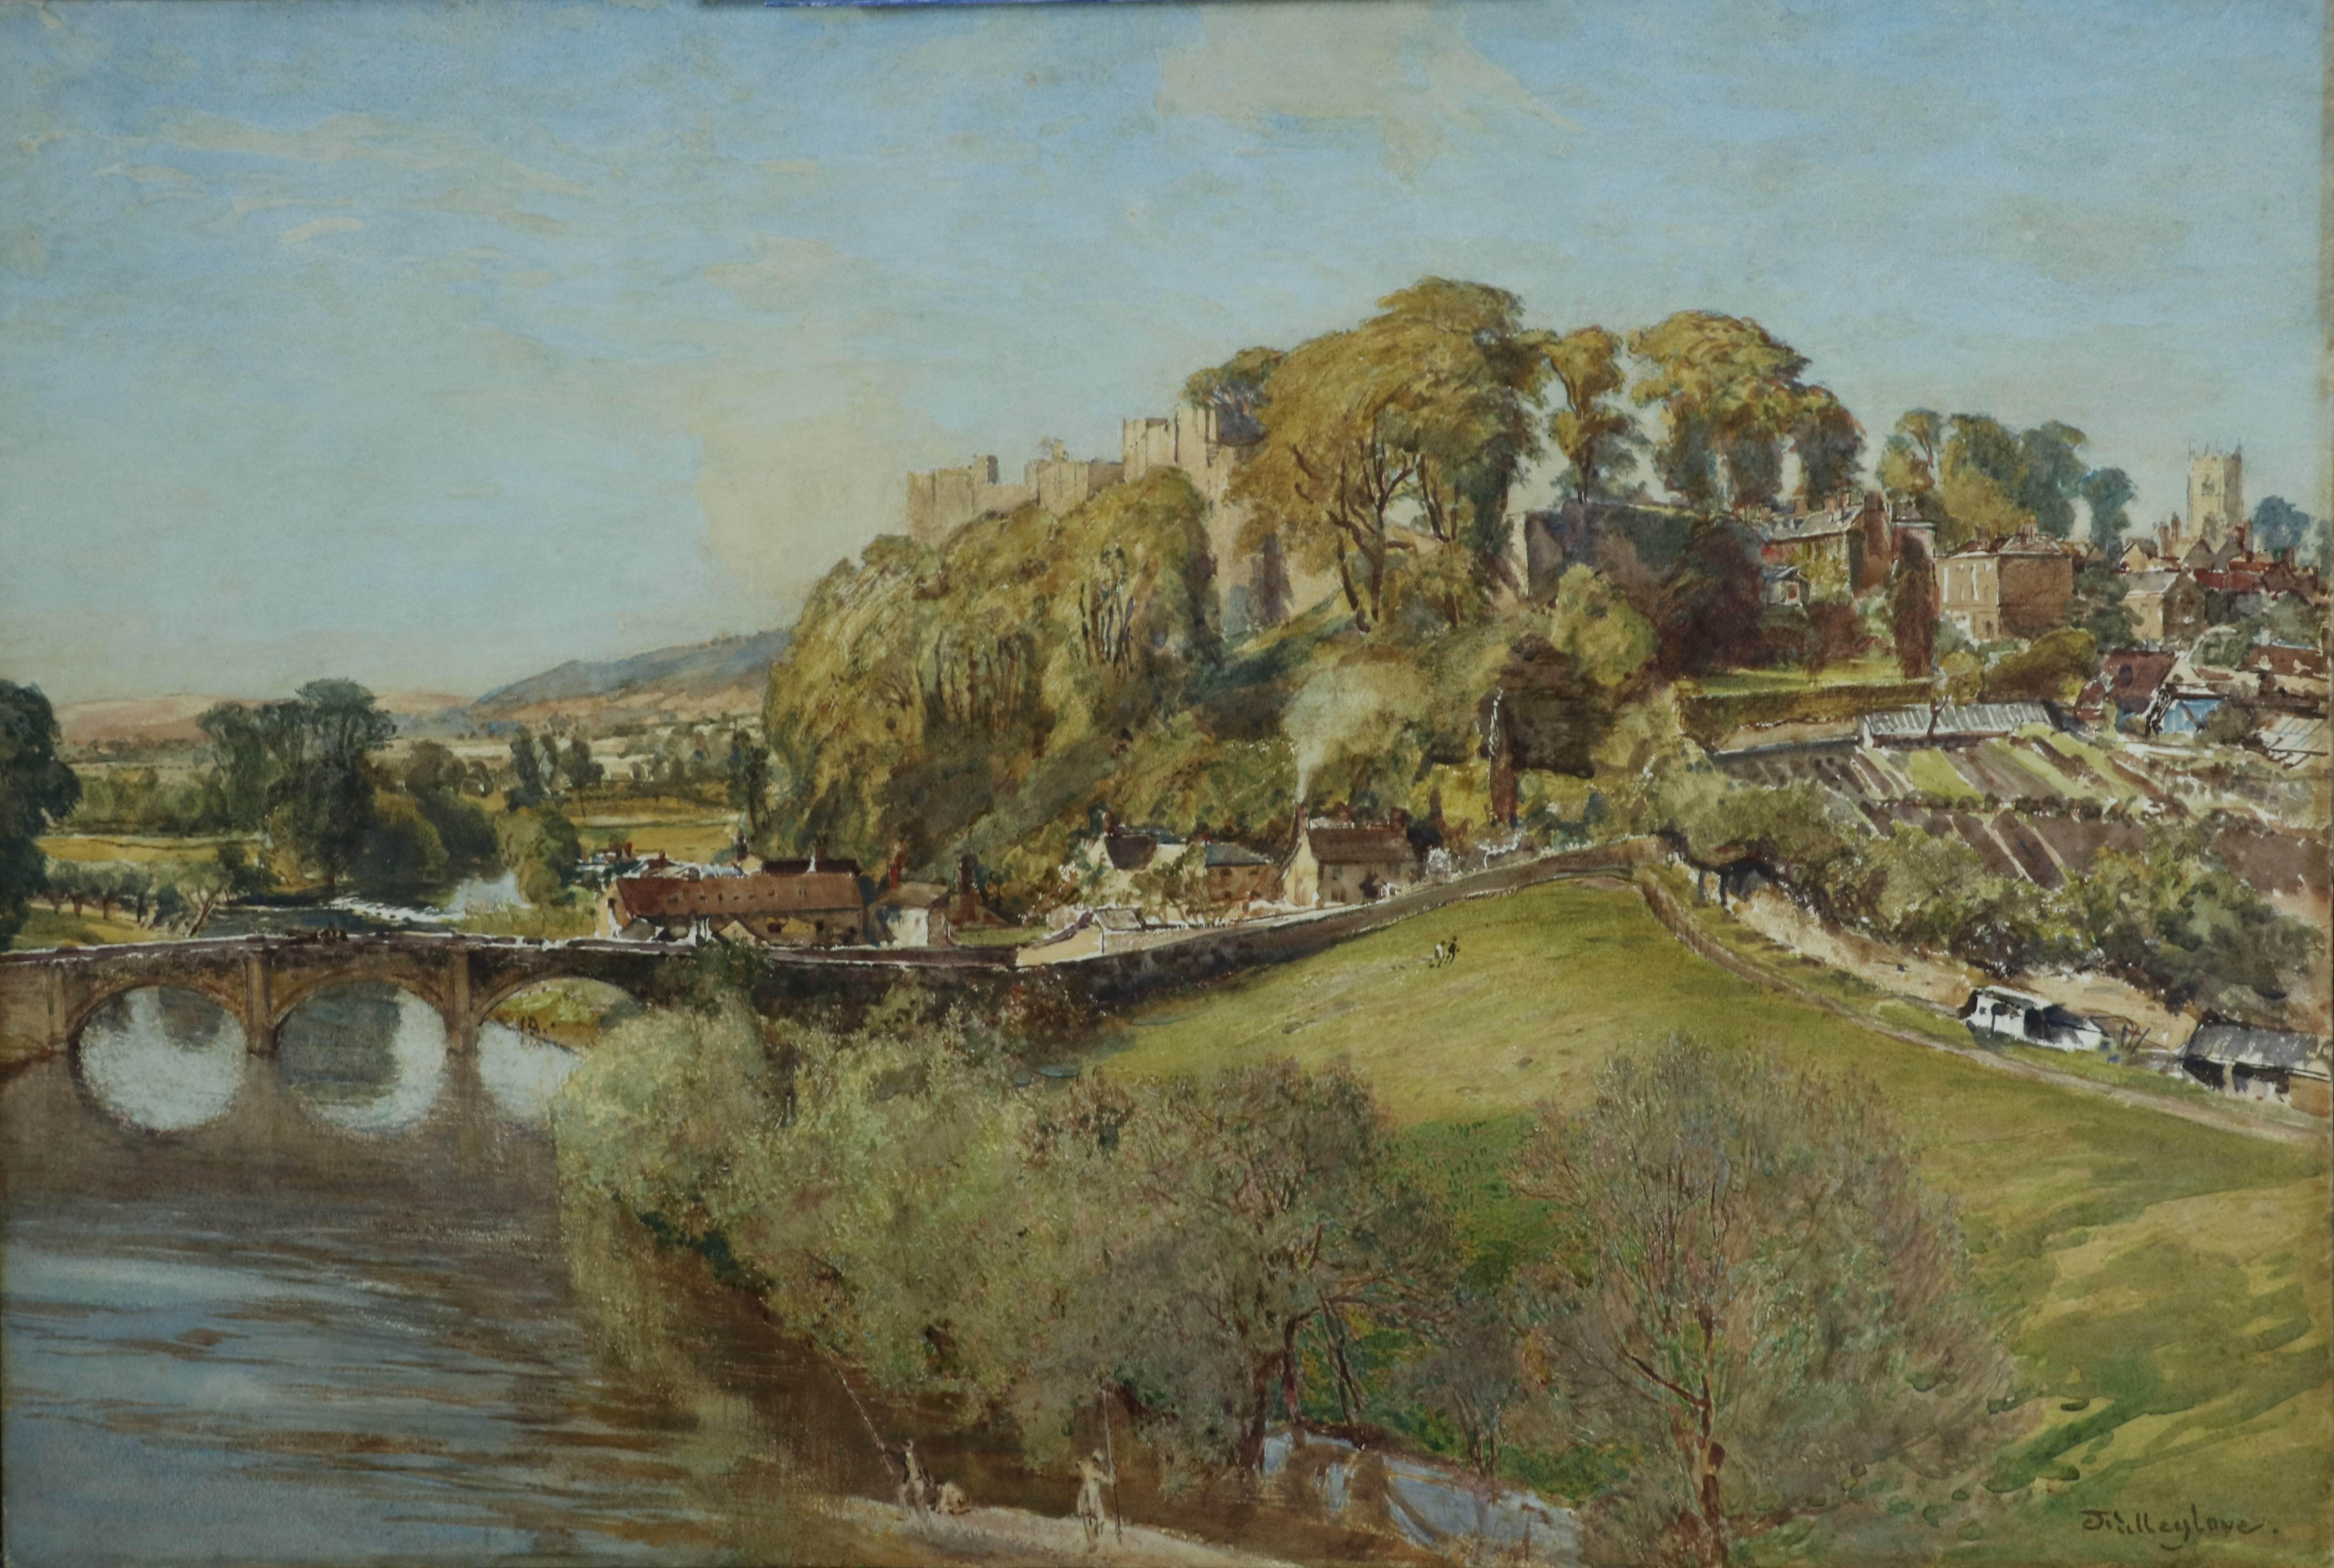 Landscape Art John Fulleylove - Vue sur Dinham et le château de Ludlow, grande aquarelle d'un paysage du 19e siècle